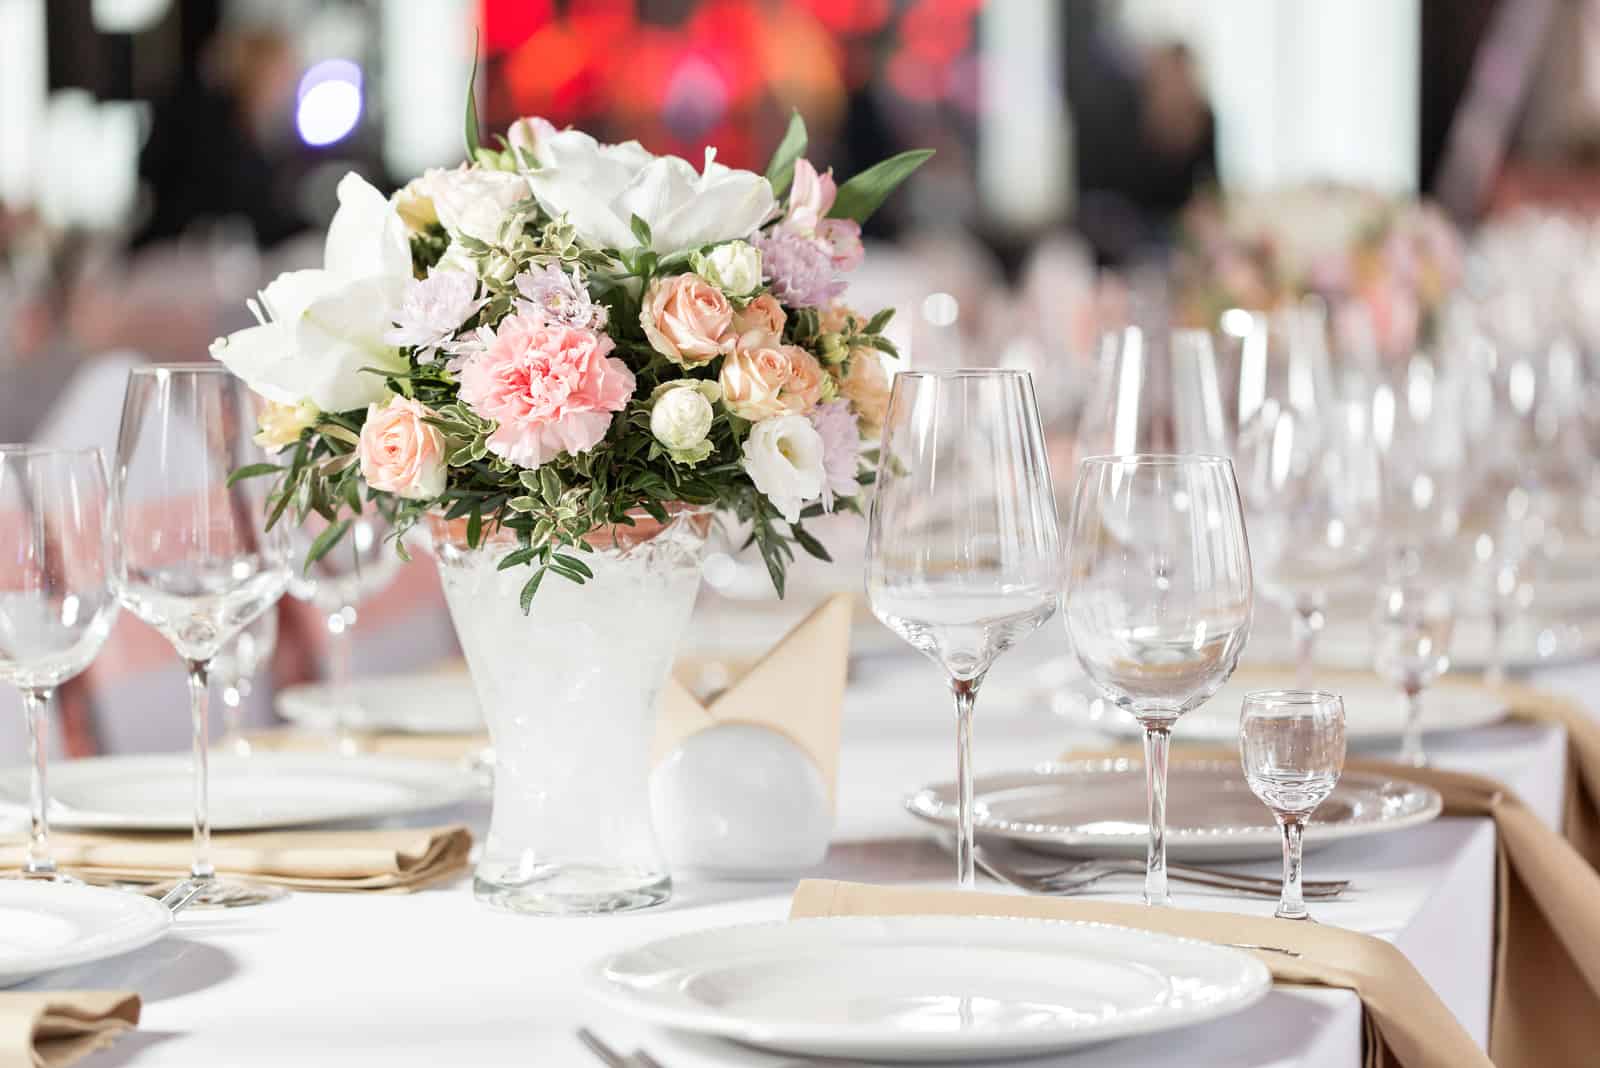 Tische für eine Eventparty oder einen Hochzeitsempfang gedeckt